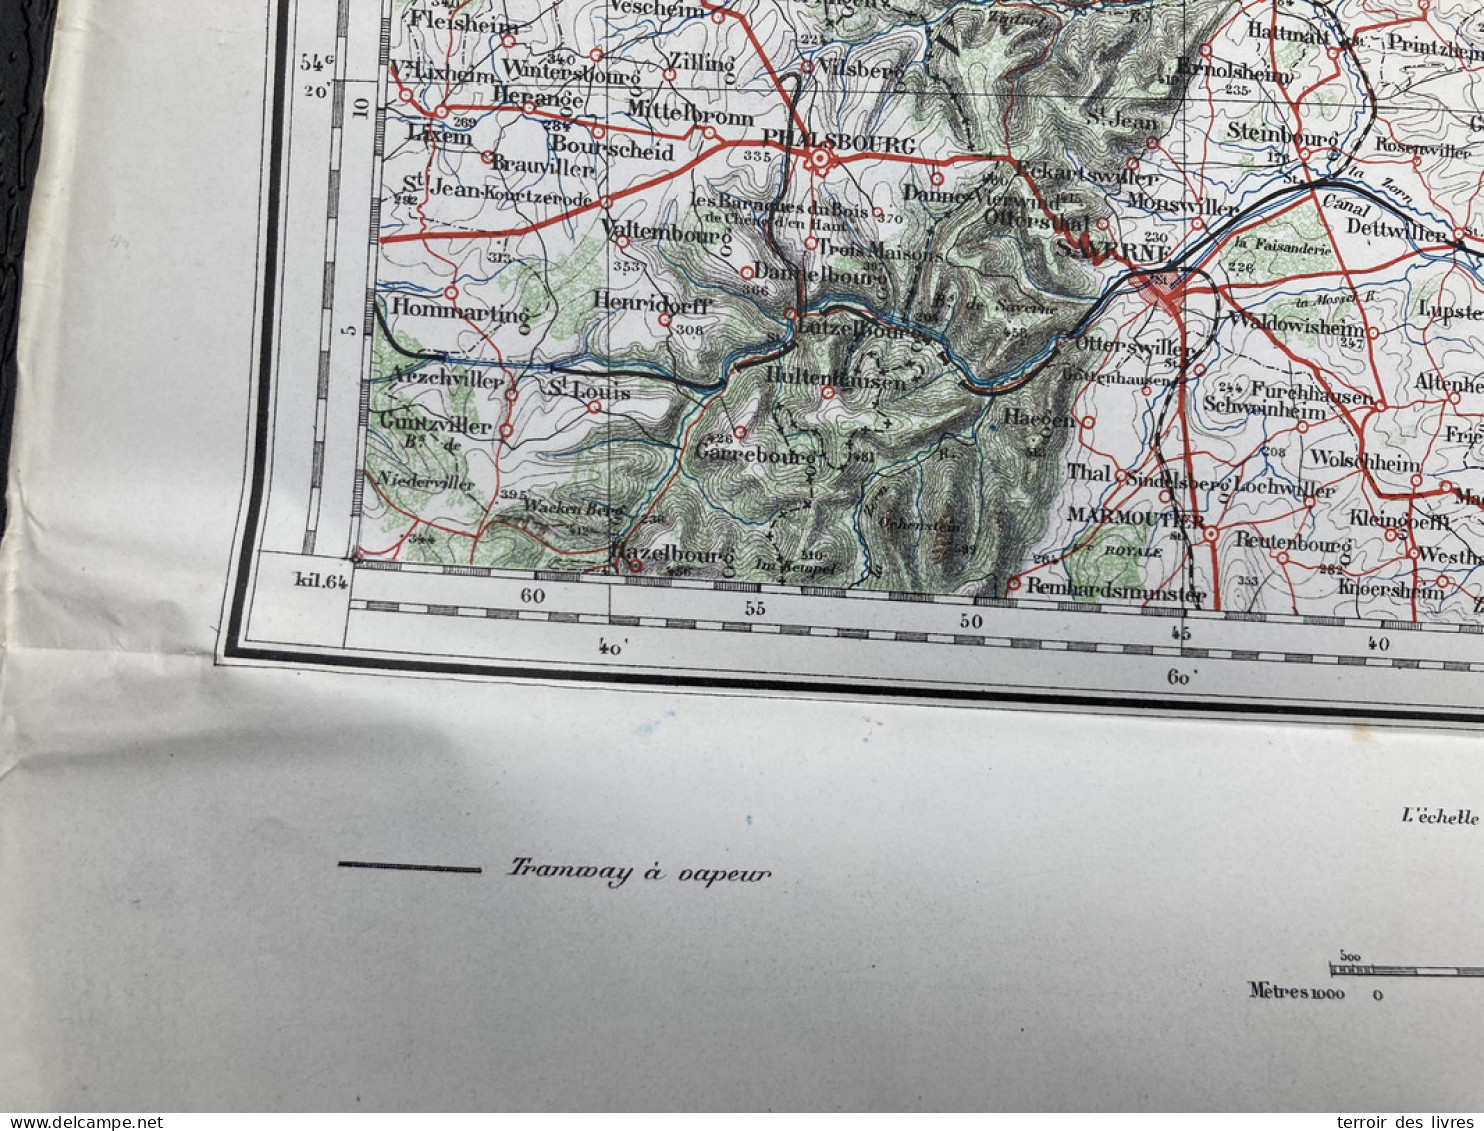 Carte état Major Années 1880 SAVERNE WISSEMBOURG 46x55cm  ROPPEVILLER LIEDERSCHIEDT  HASPELSCHIEDT  HANVILLER  BOUSSEVIL - Cartes Géographiques